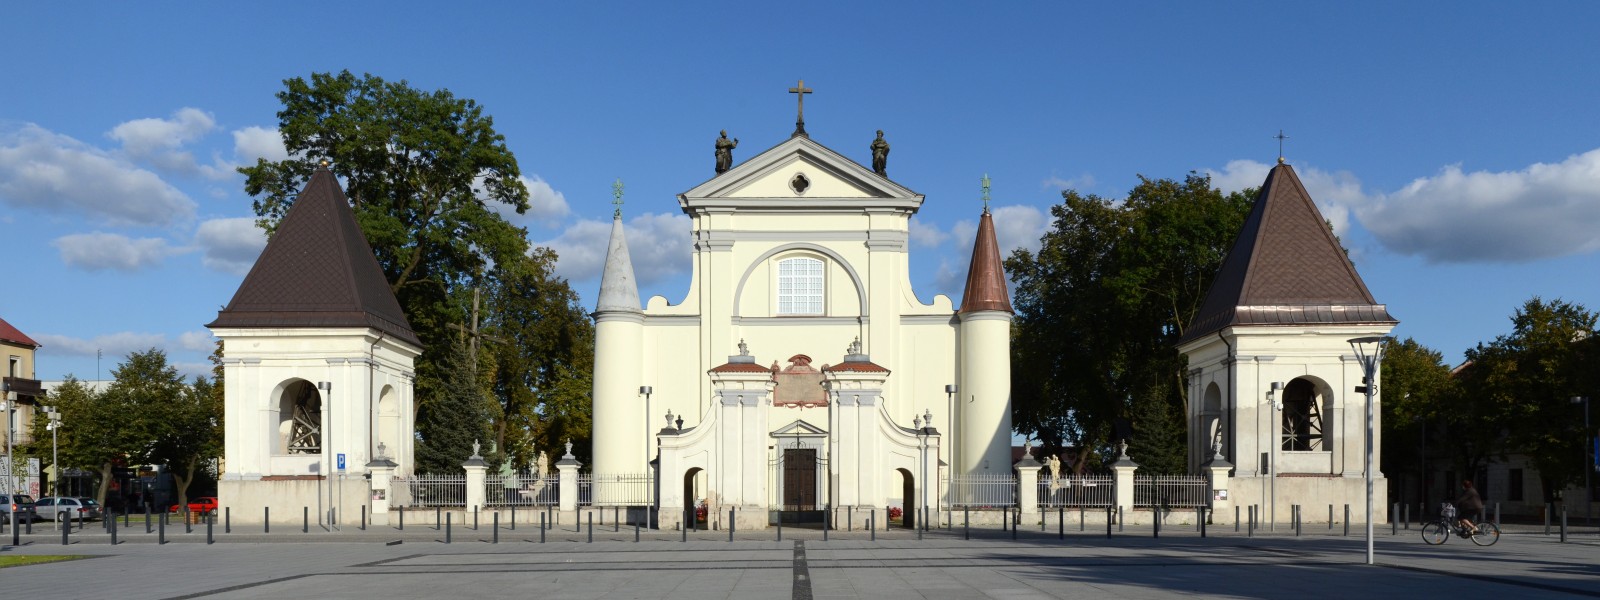 Węgrów kościół 2012